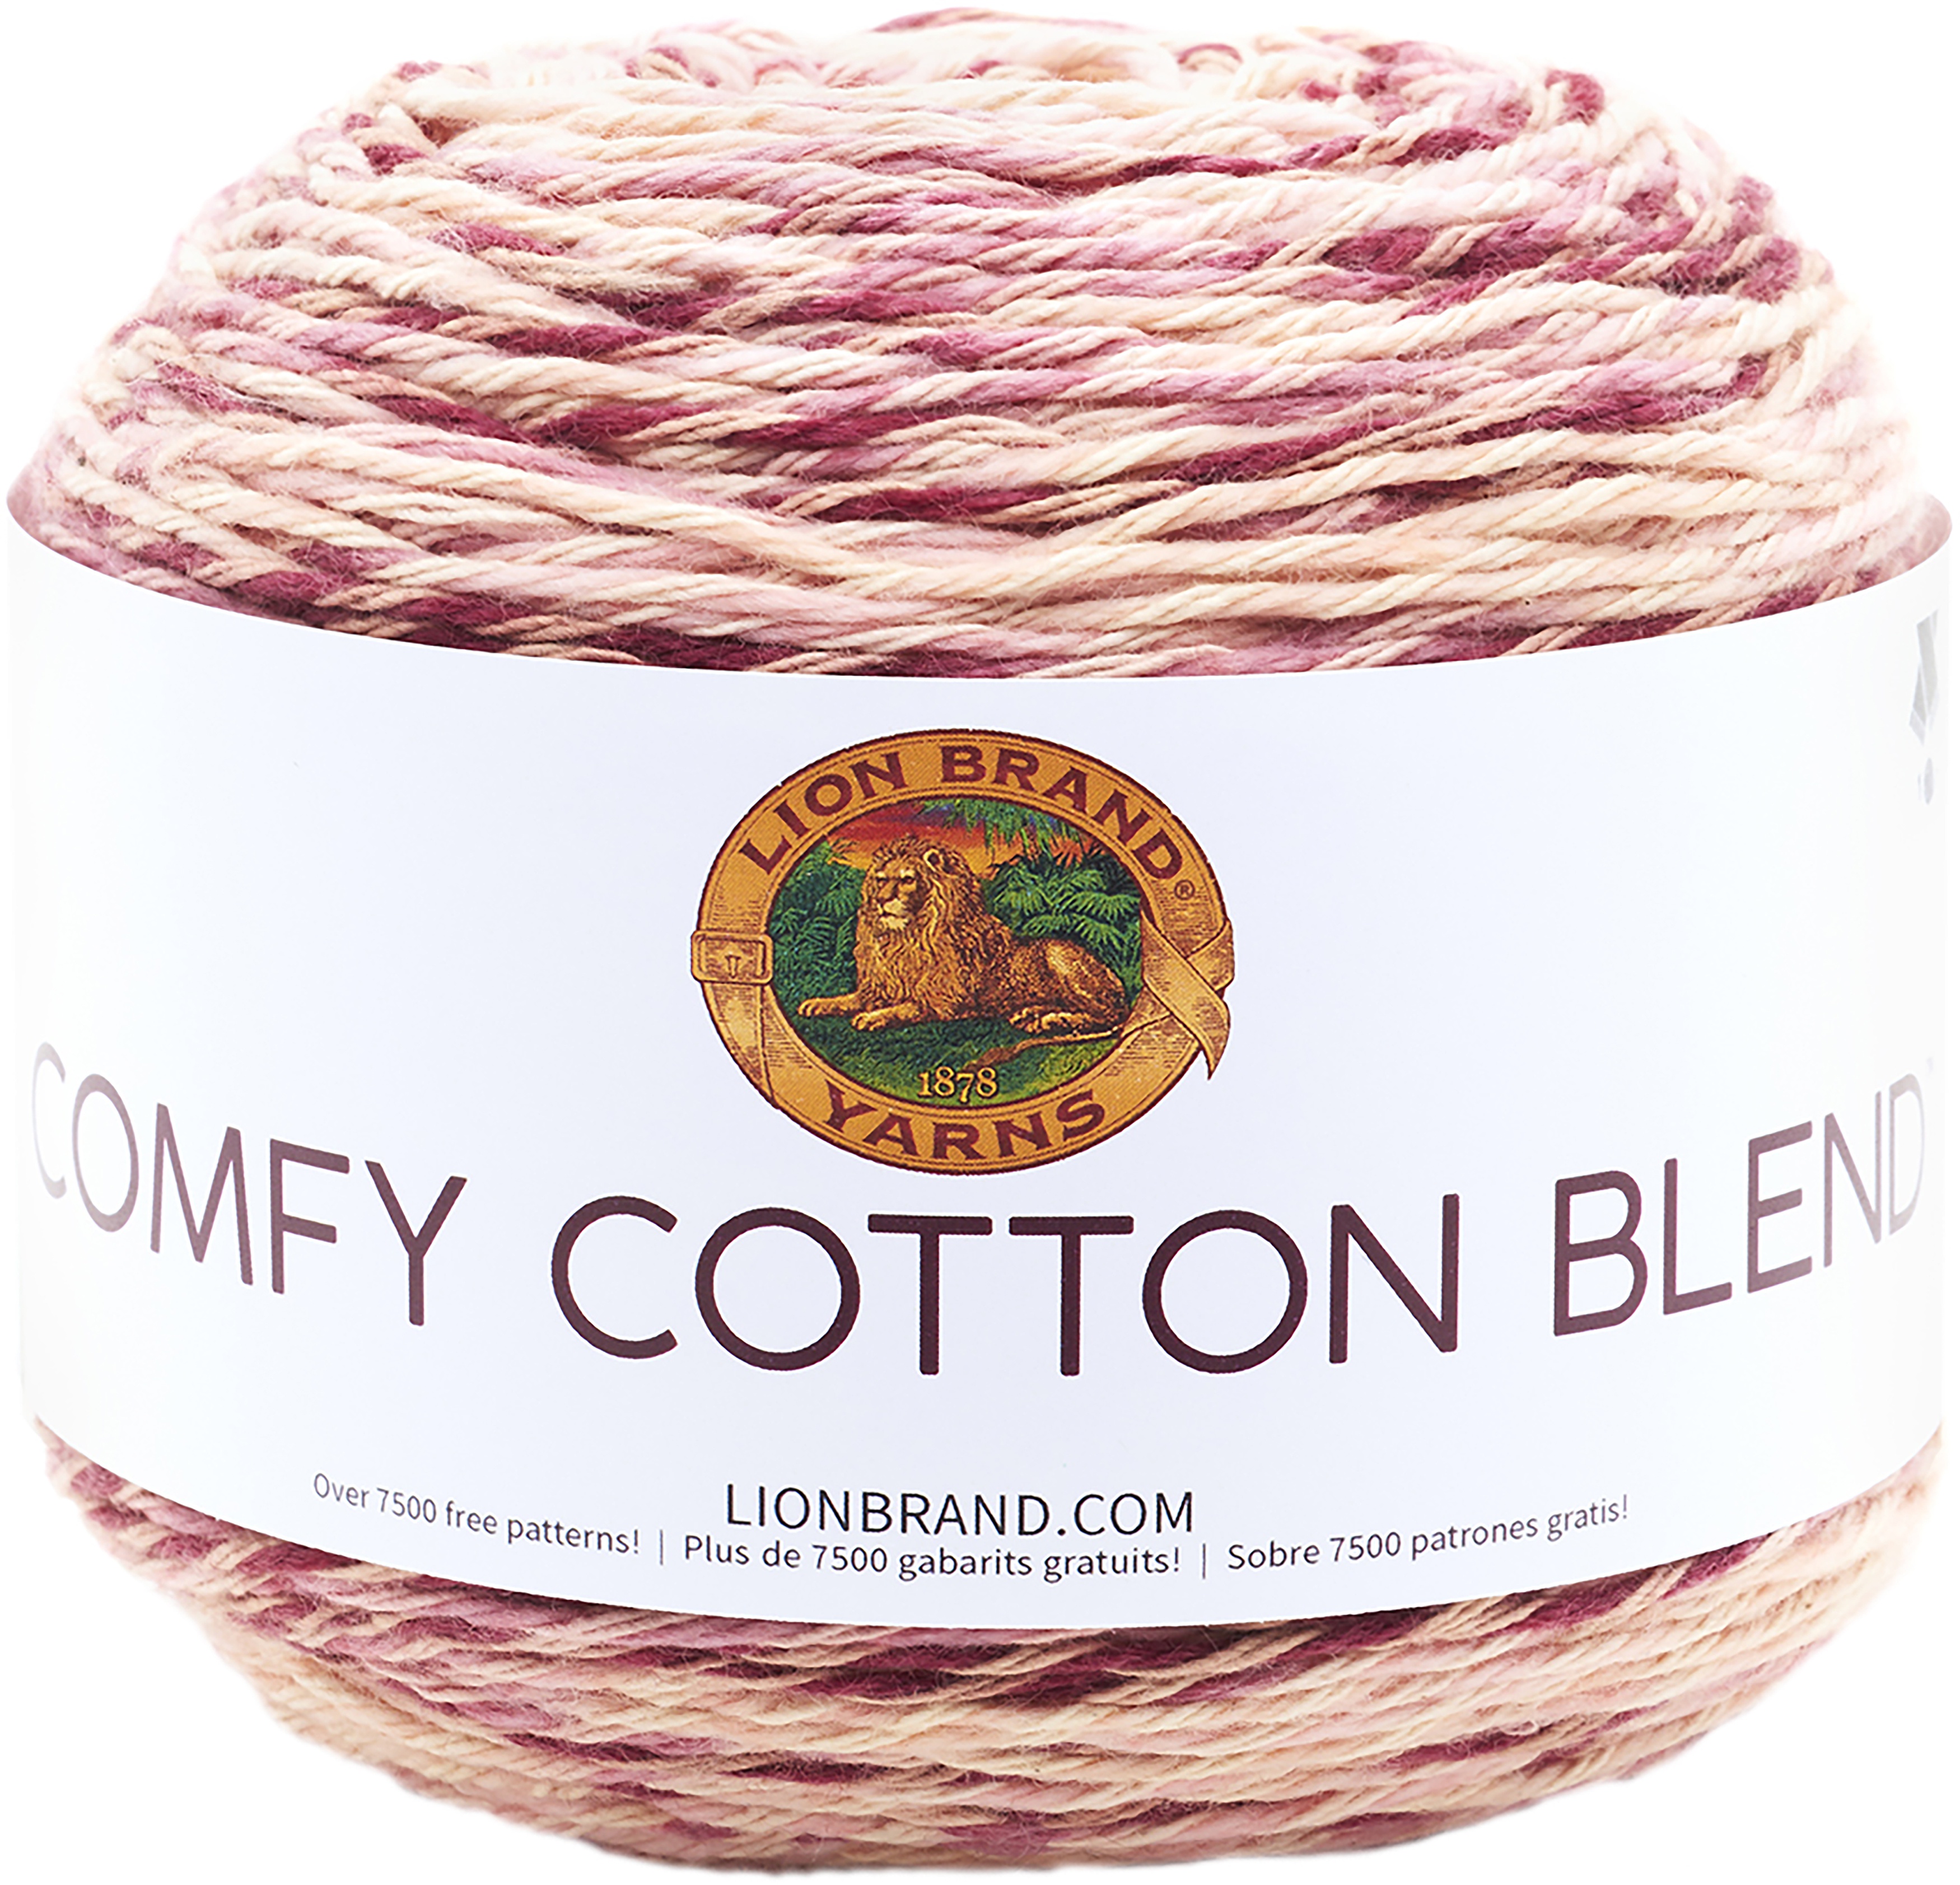 Lion Brand Yarn 756-720 Comfy Cotton Blend Yarn 1 skein//ball Lovie Dovie